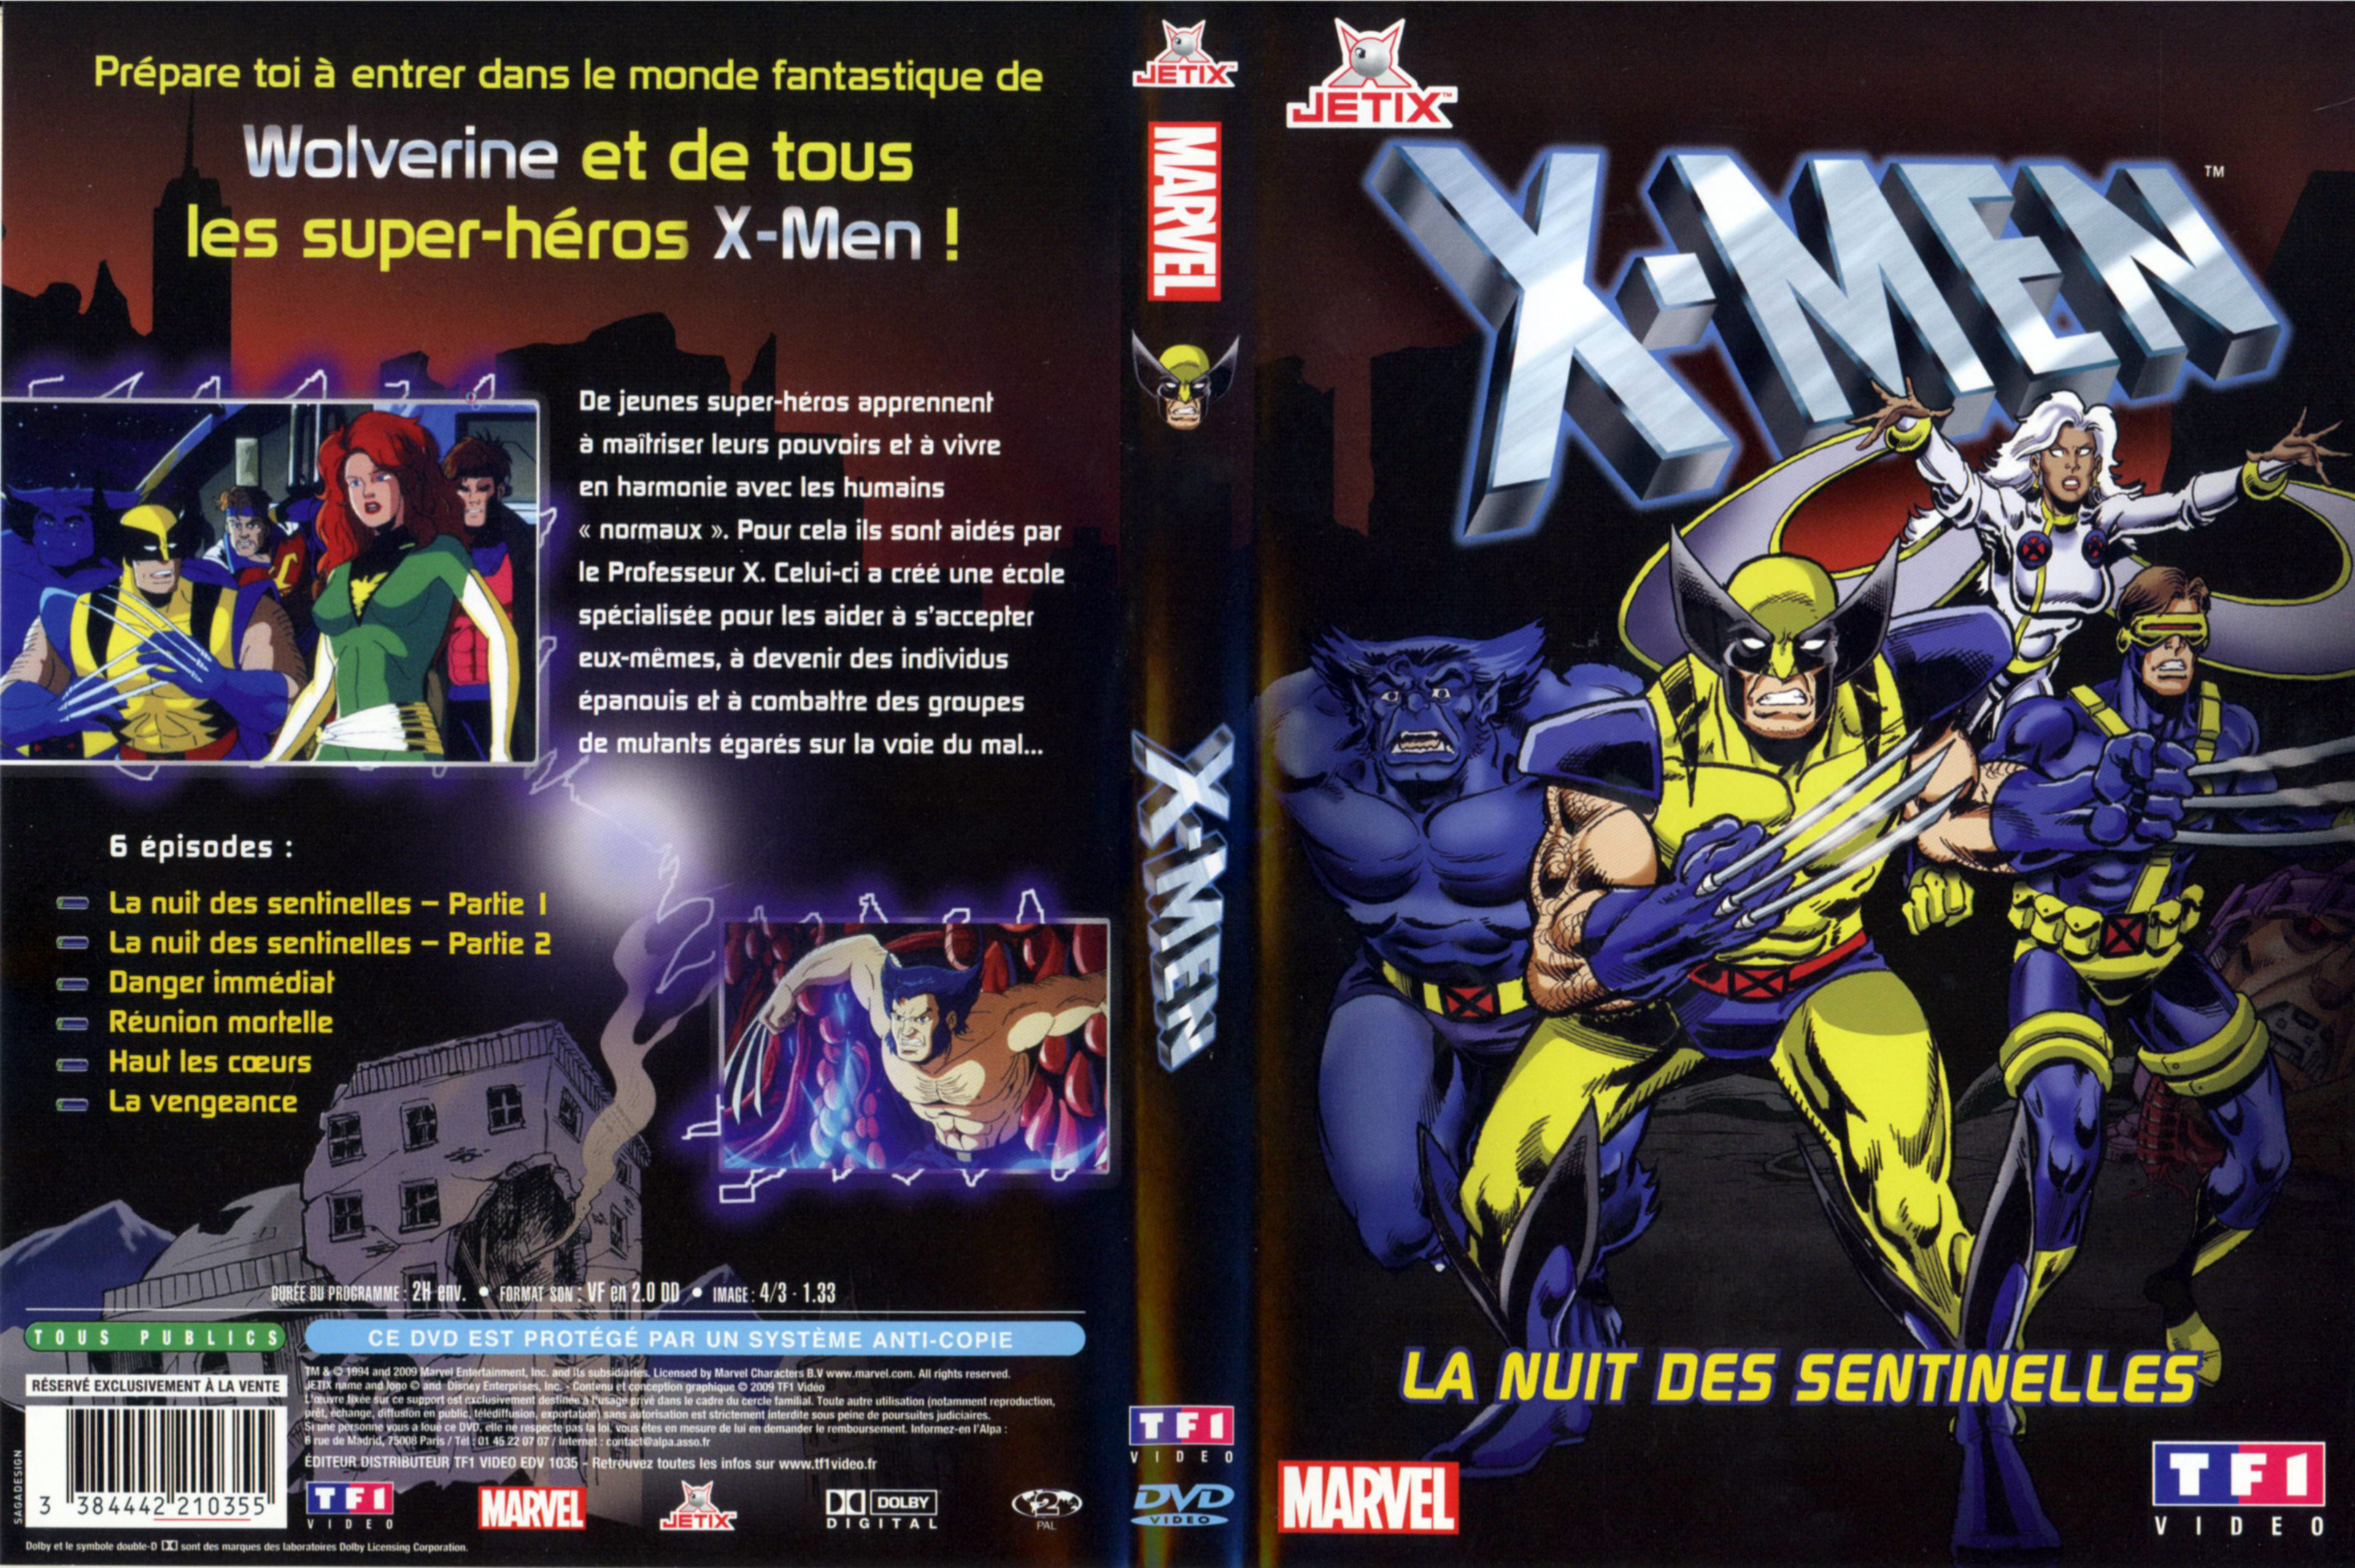 Jaquette DVD X-men la nuit des sentinelles